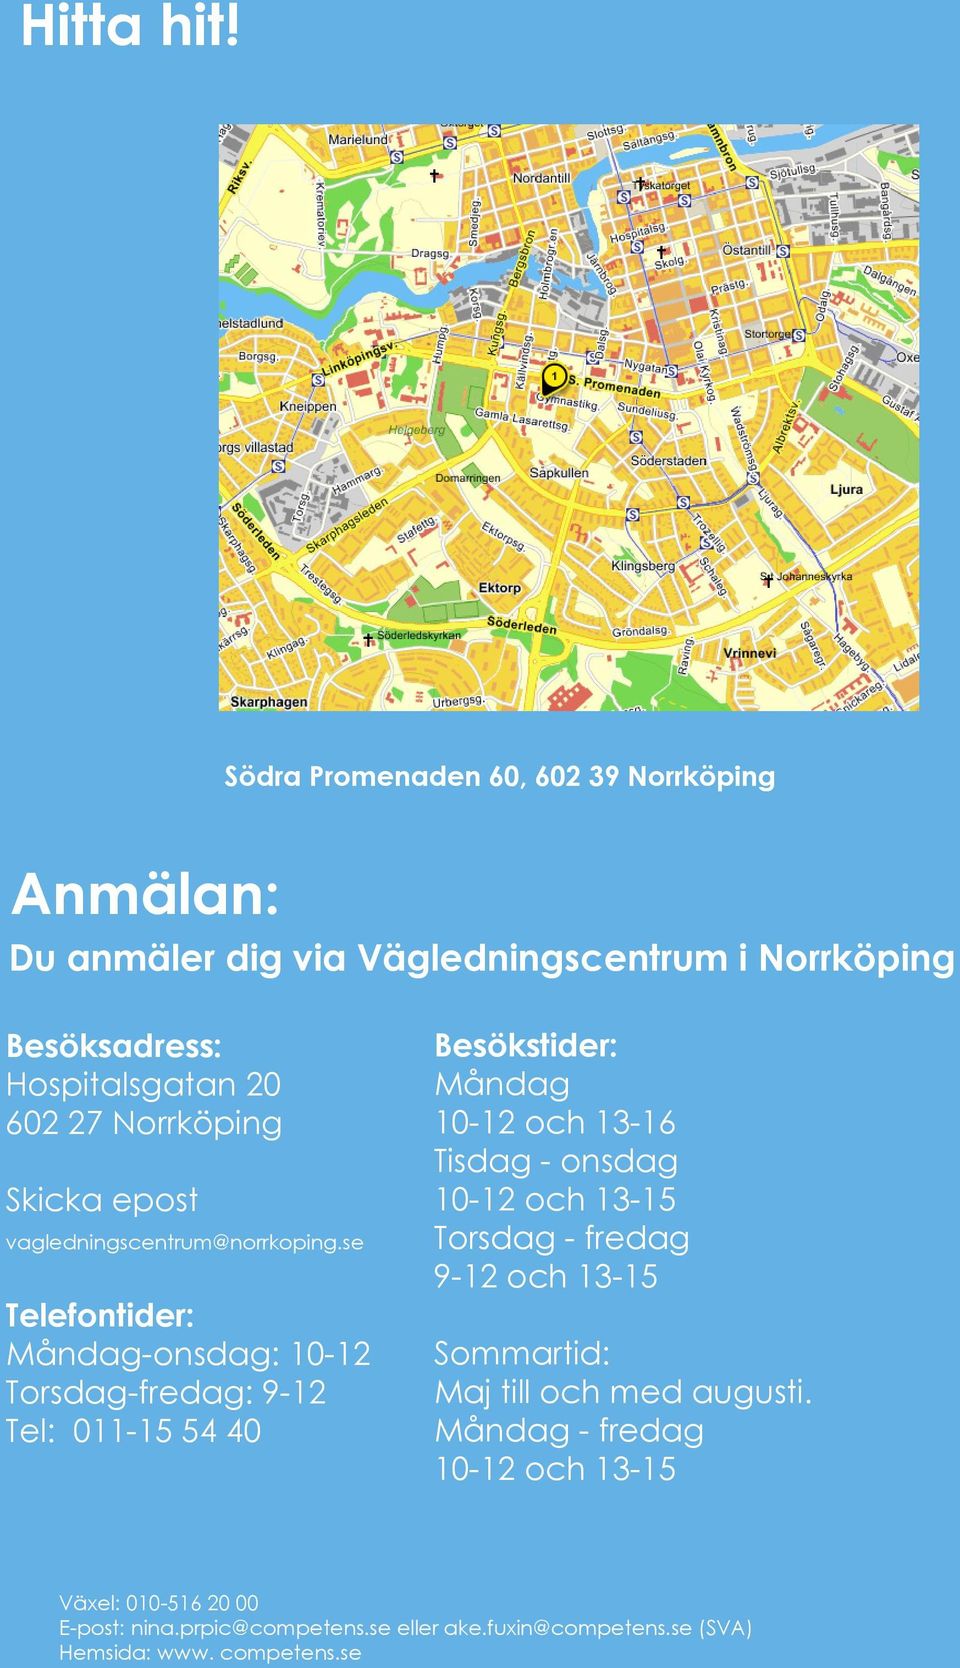 Norrköping Skicka epost vagledningscentrum@norrkoping.